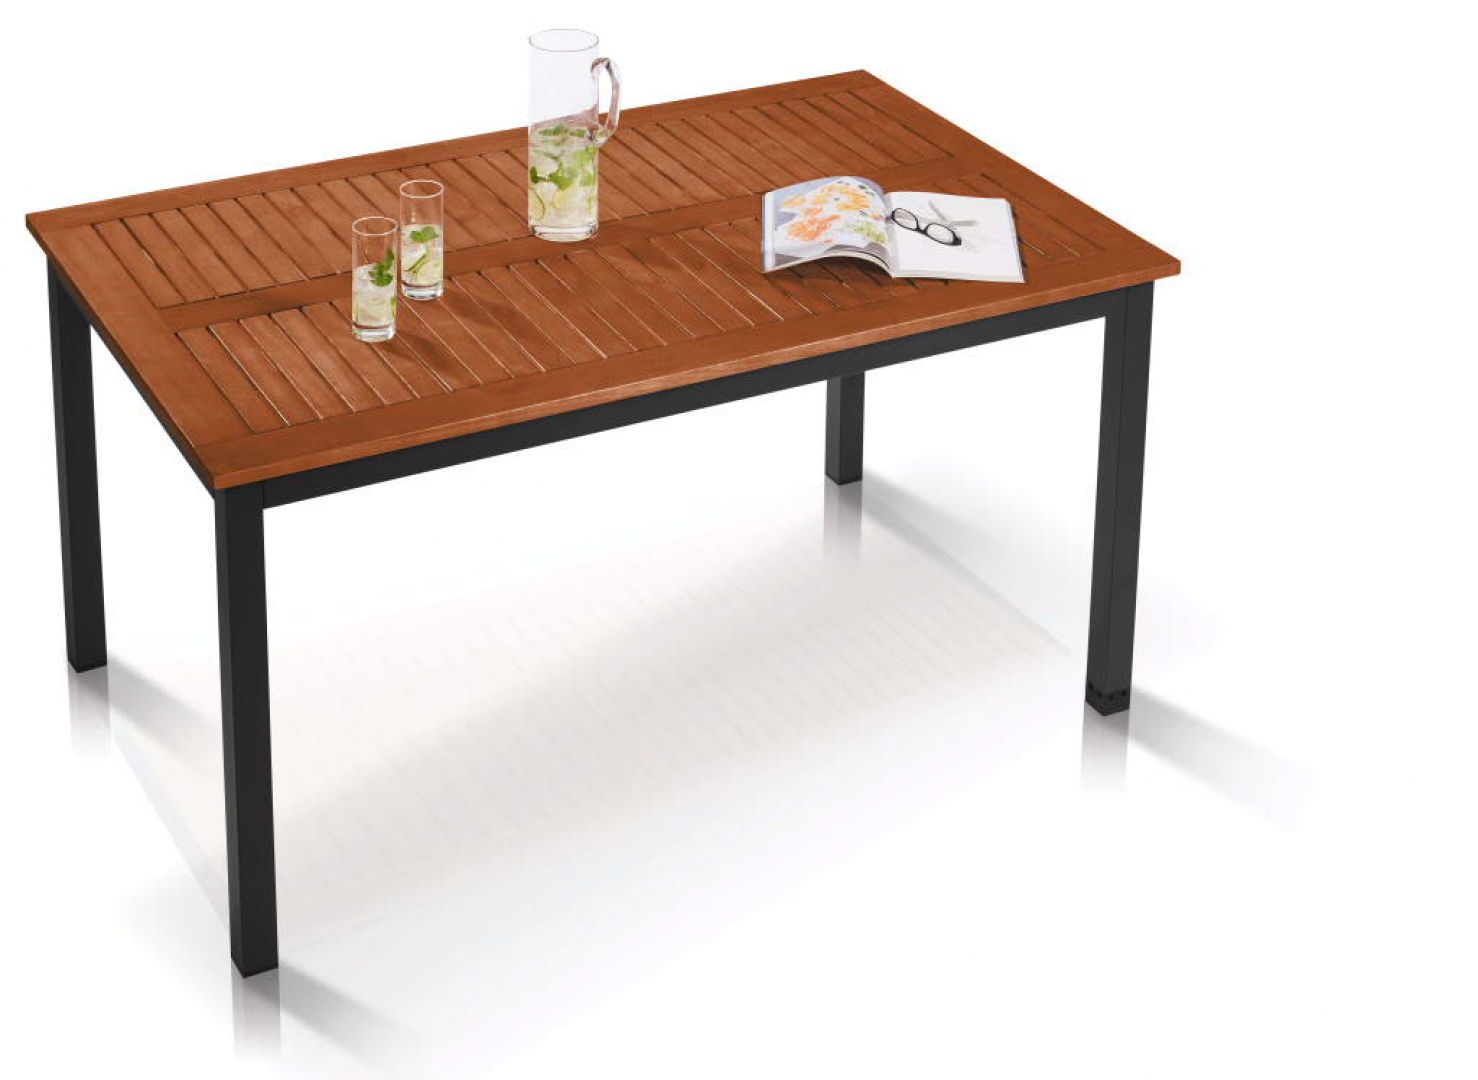 Stół z drewnianym blatem, który odporny jest na trudne warunki atmosferyczne. Fot. Lidl